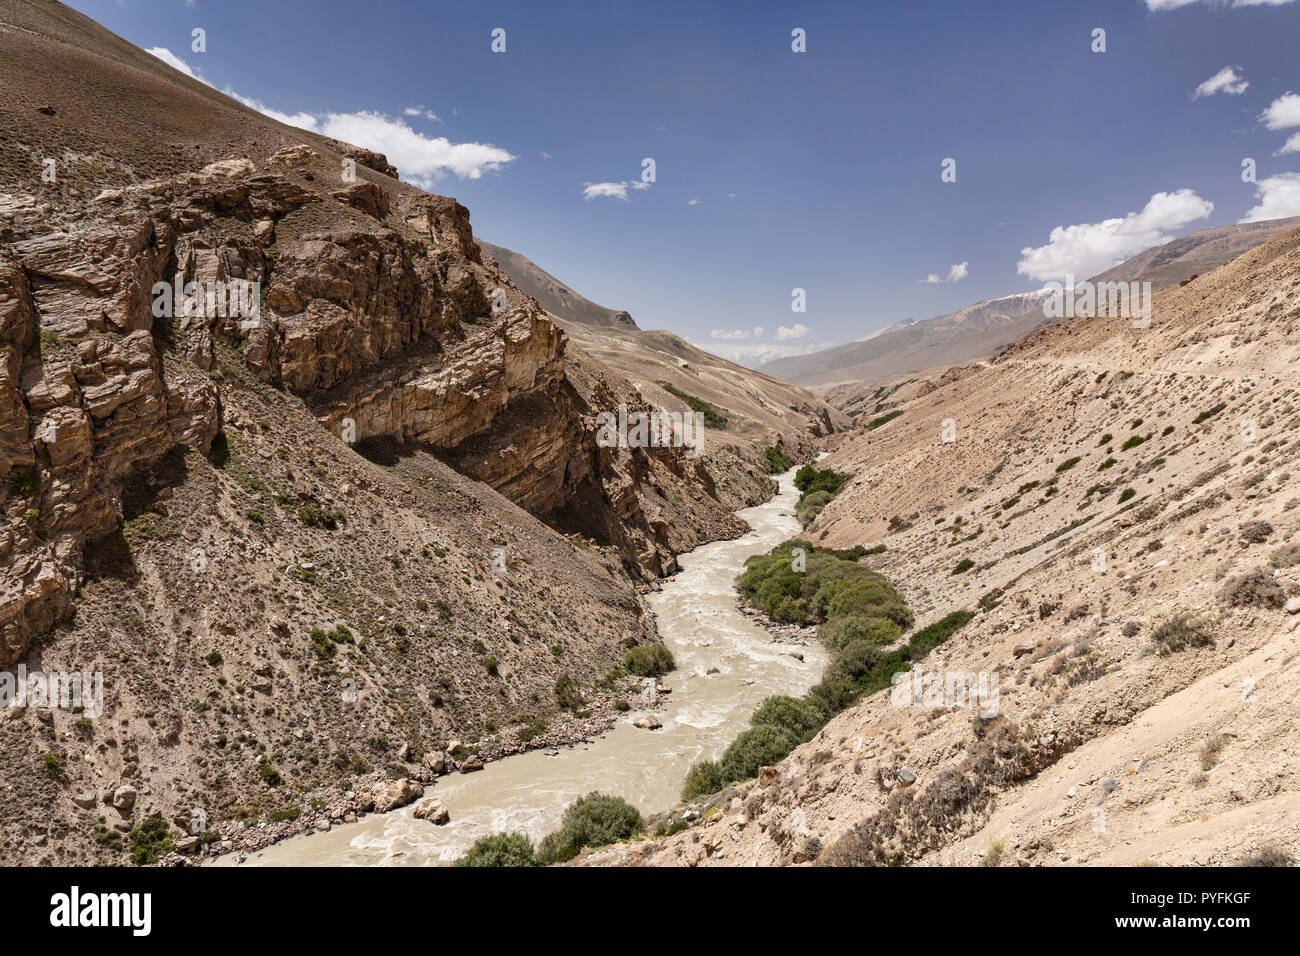 La rivière Pamir de la vallée de Wakhan détour entre Langar et Alichur, Pamir Highway, Haut-badakhchan, Tadjikistan Banque D'Images